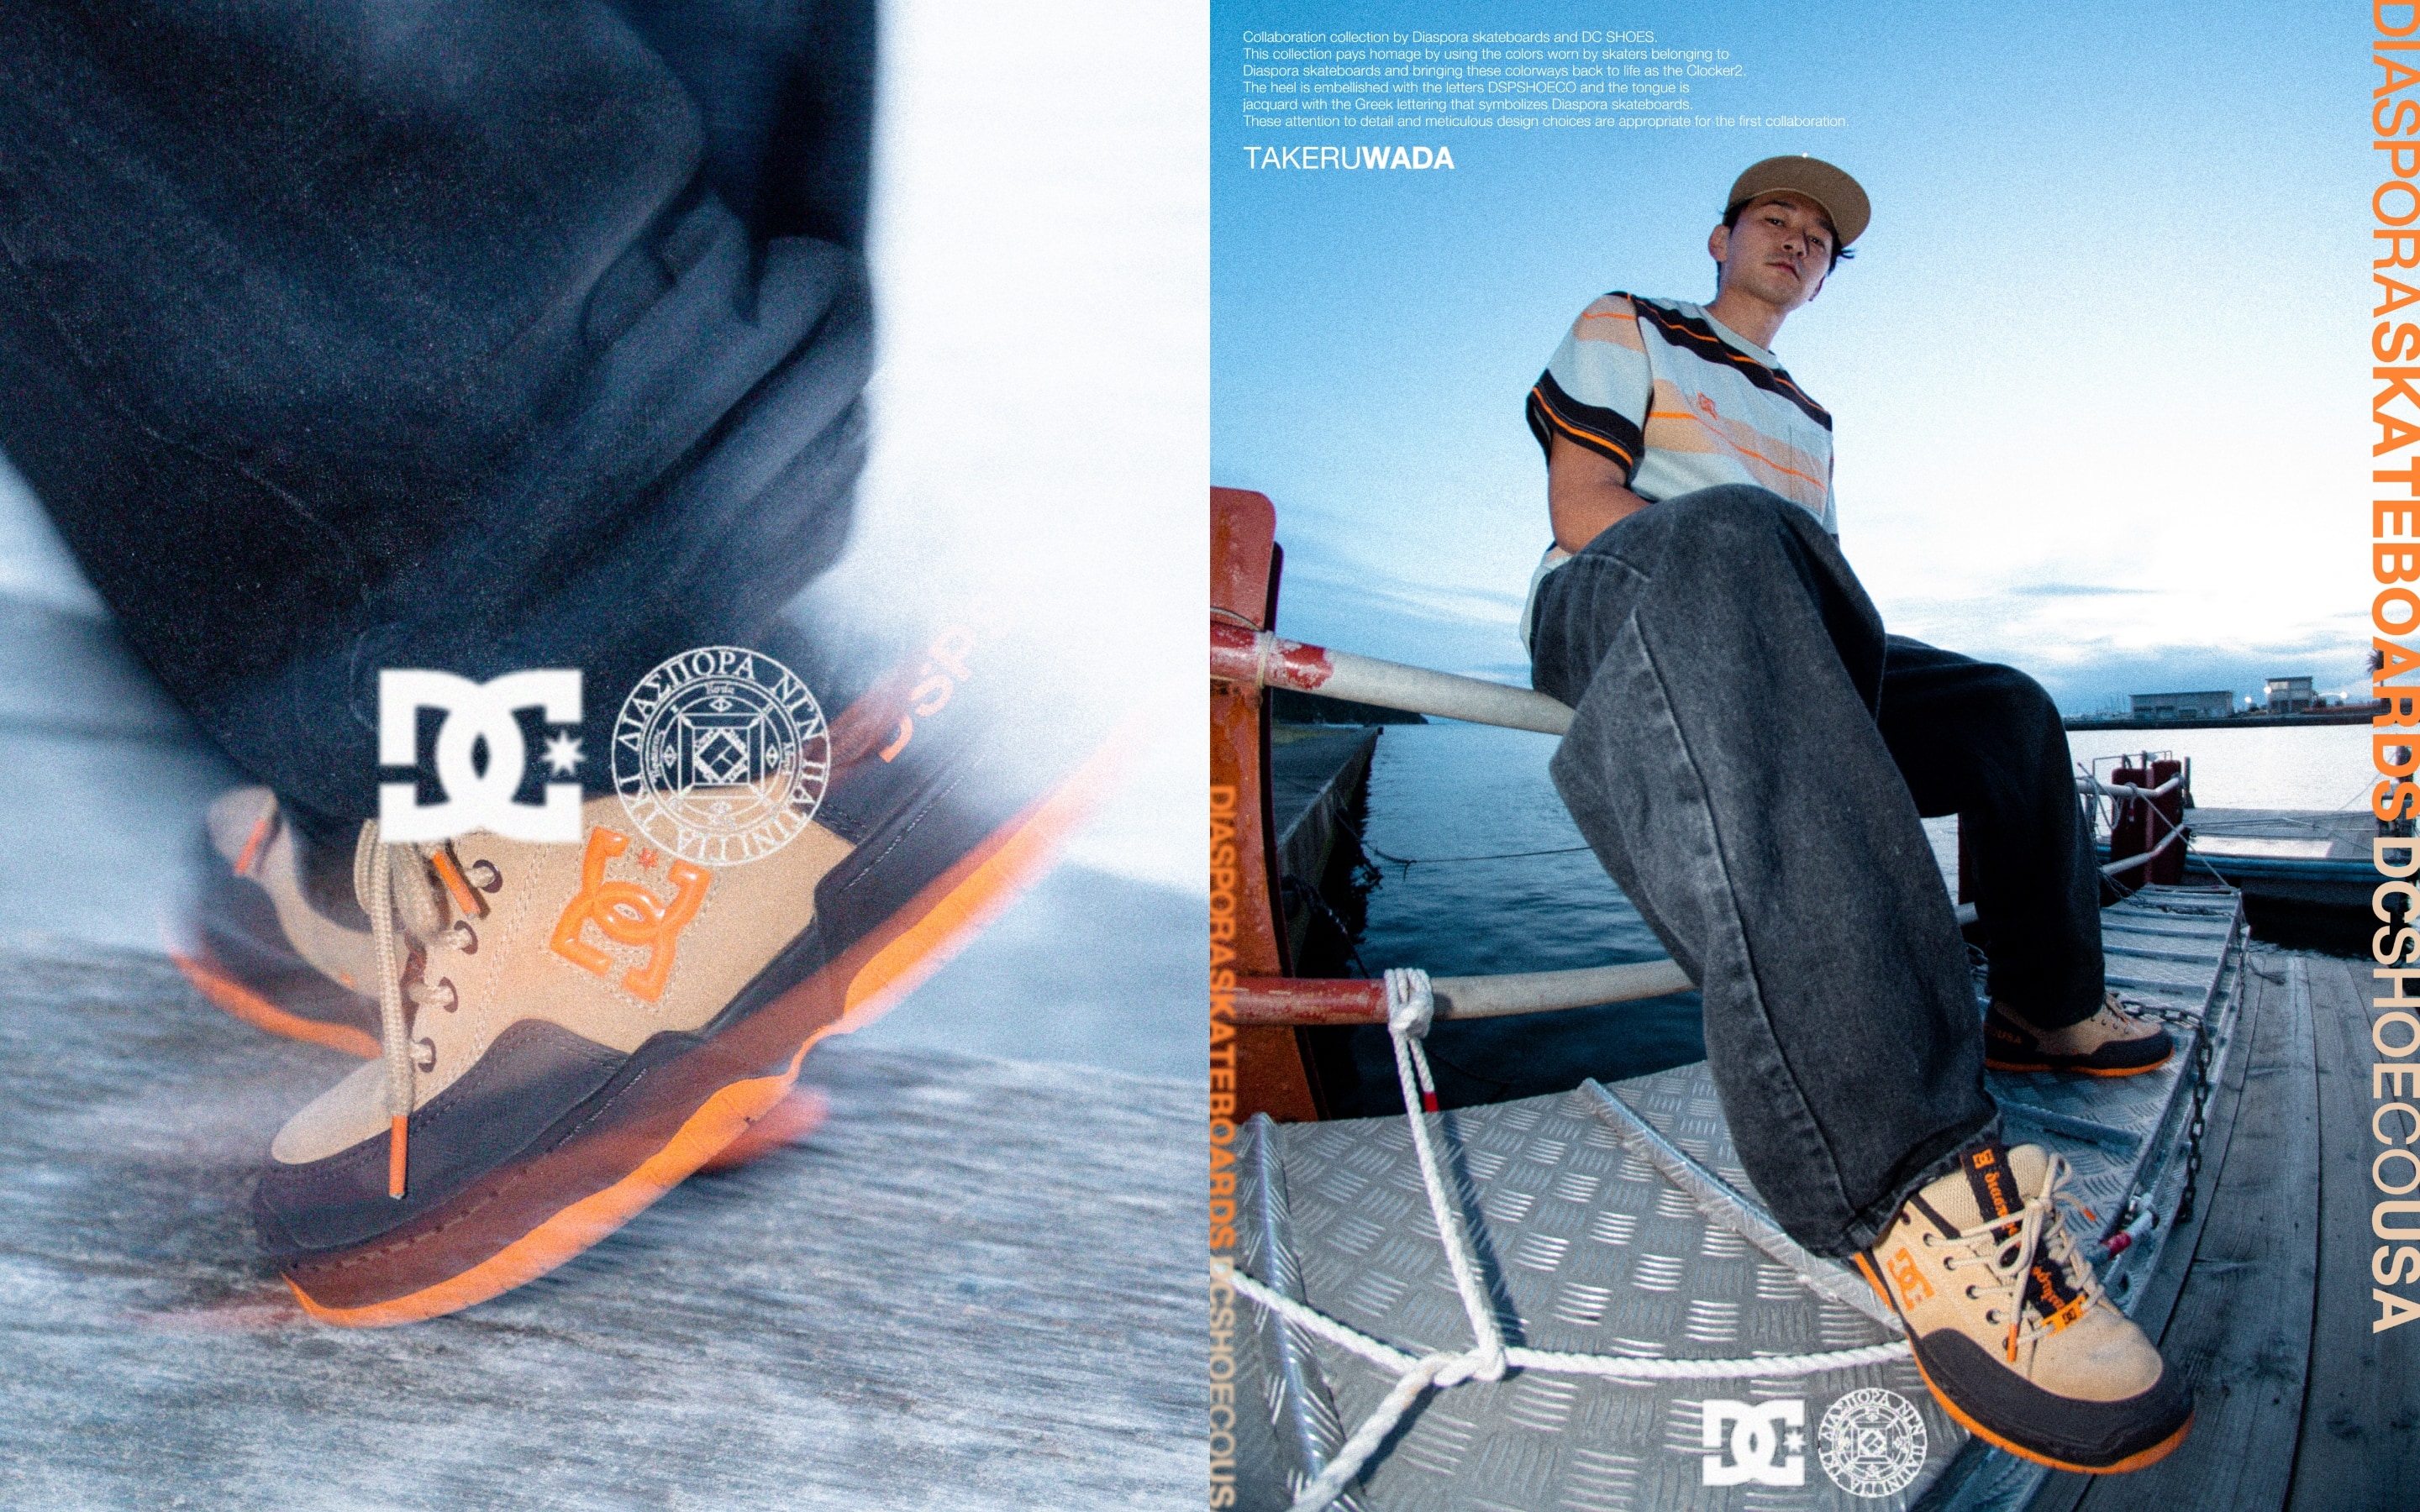 DC SHOES x Diaspora skateboards